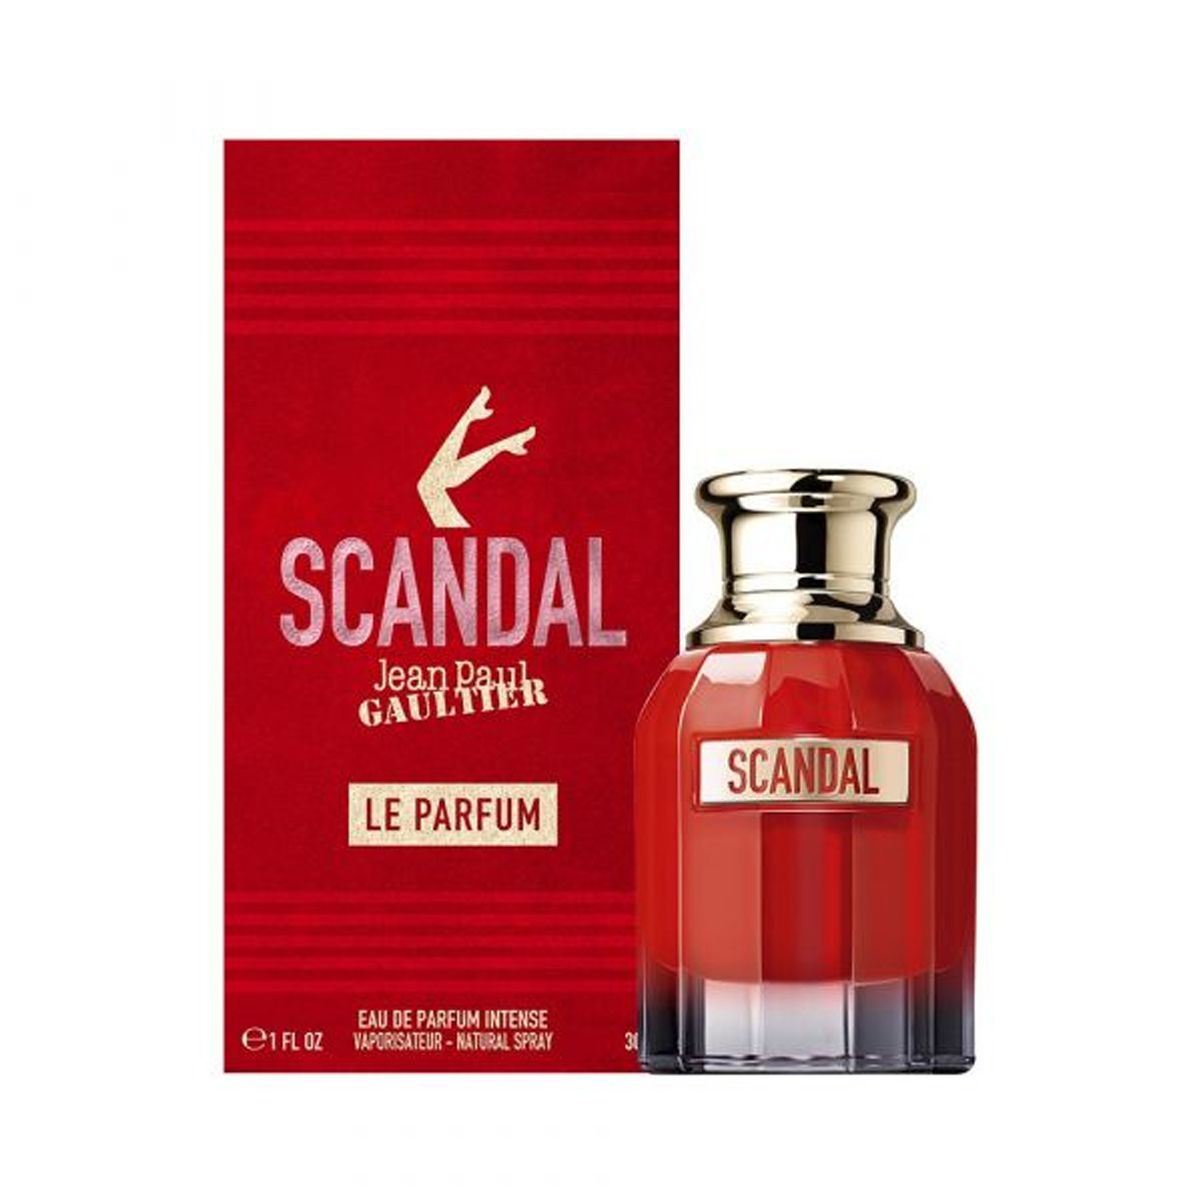  Jean Paul Gaultier Scandal Le Parfum 